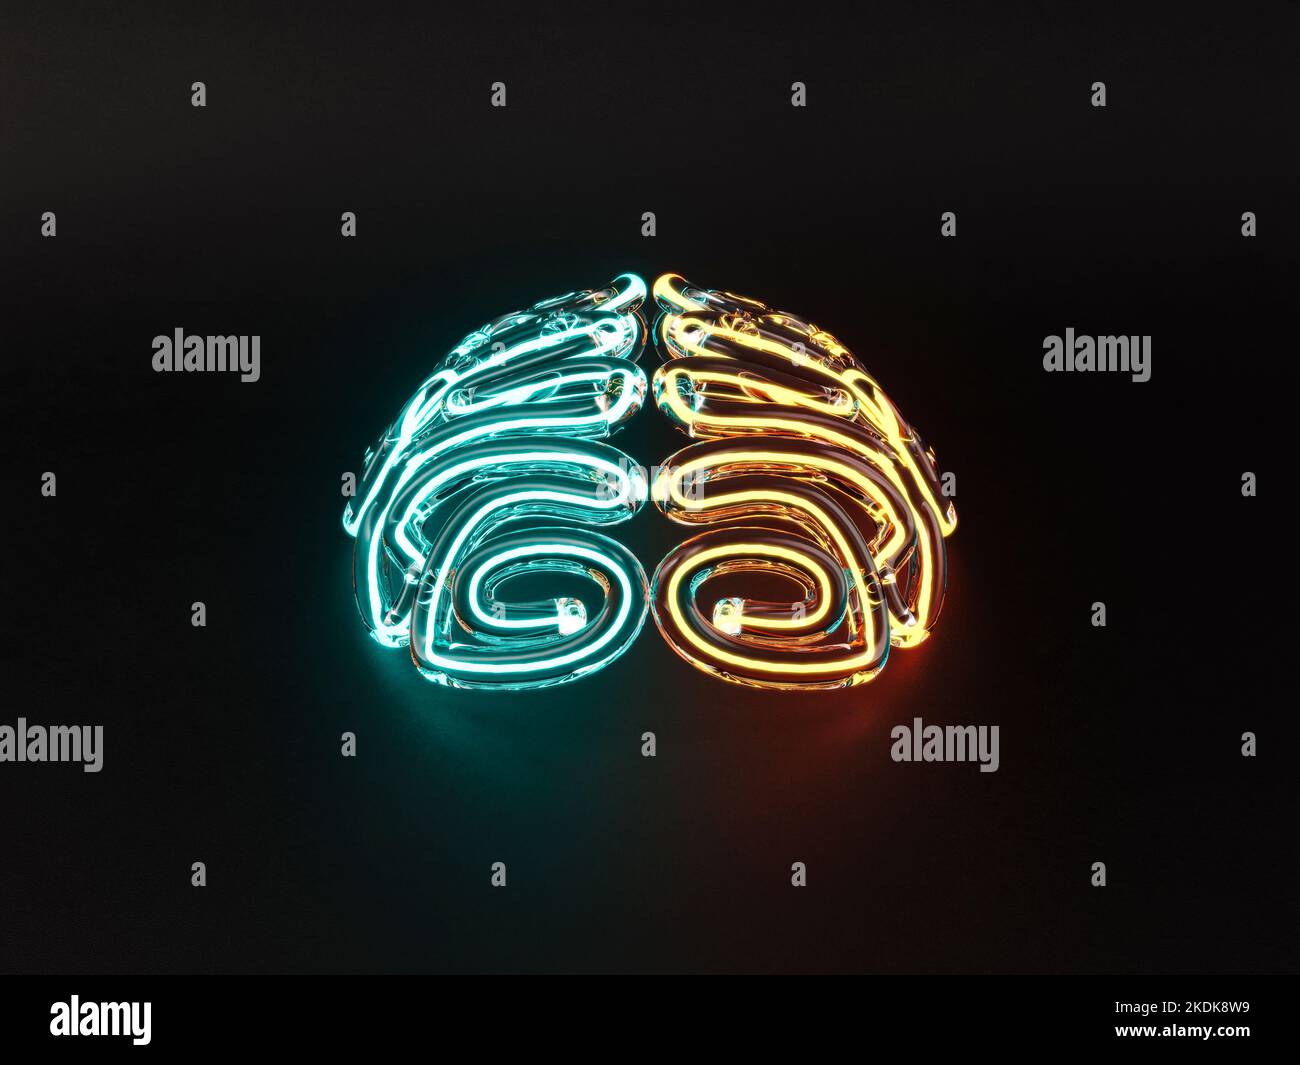 Ein Glas stilisiertes Gehirn, das von verschiedenen Neon-Leuchtstoffröhren auf einem isolierten dunklen Hintergrund beleuchtet wird - 3D Render Stockfoto